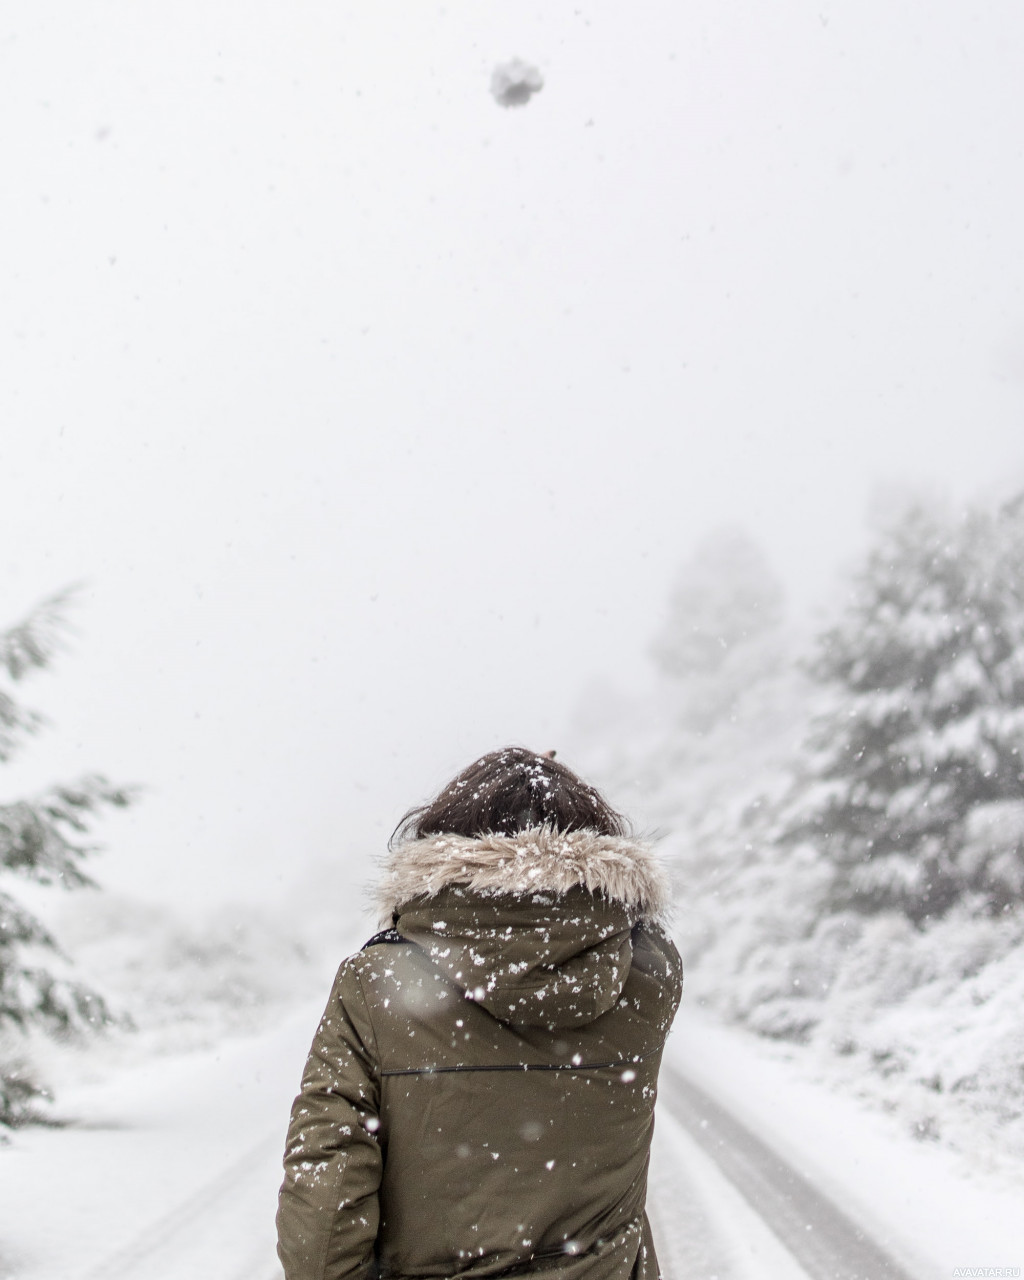 100 000 изображений по запросу Девушка зимой спина доступны в рамках роялти-фри лицензии